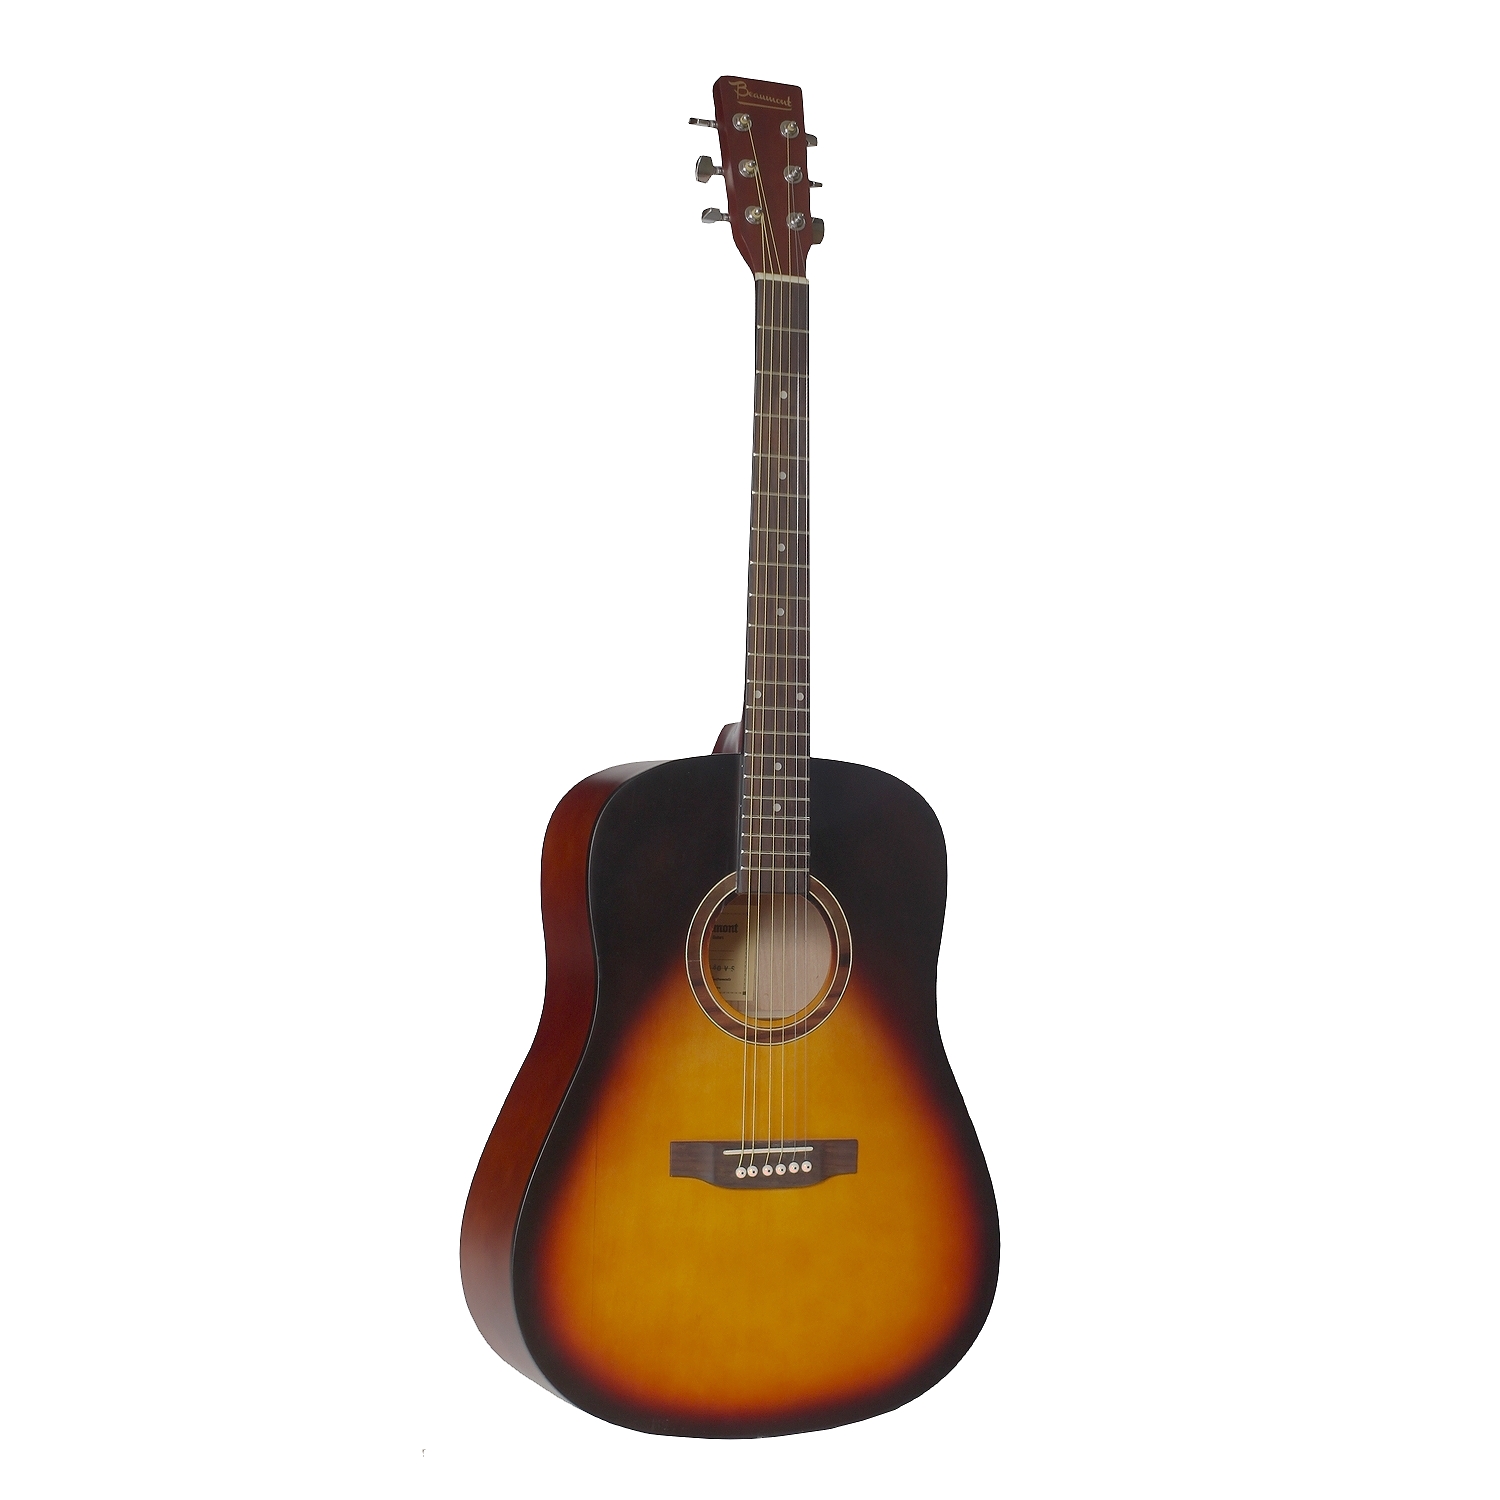 Акустические гитары Beaumont DG80/VS гитара акустическая дерево 97см с вырезом